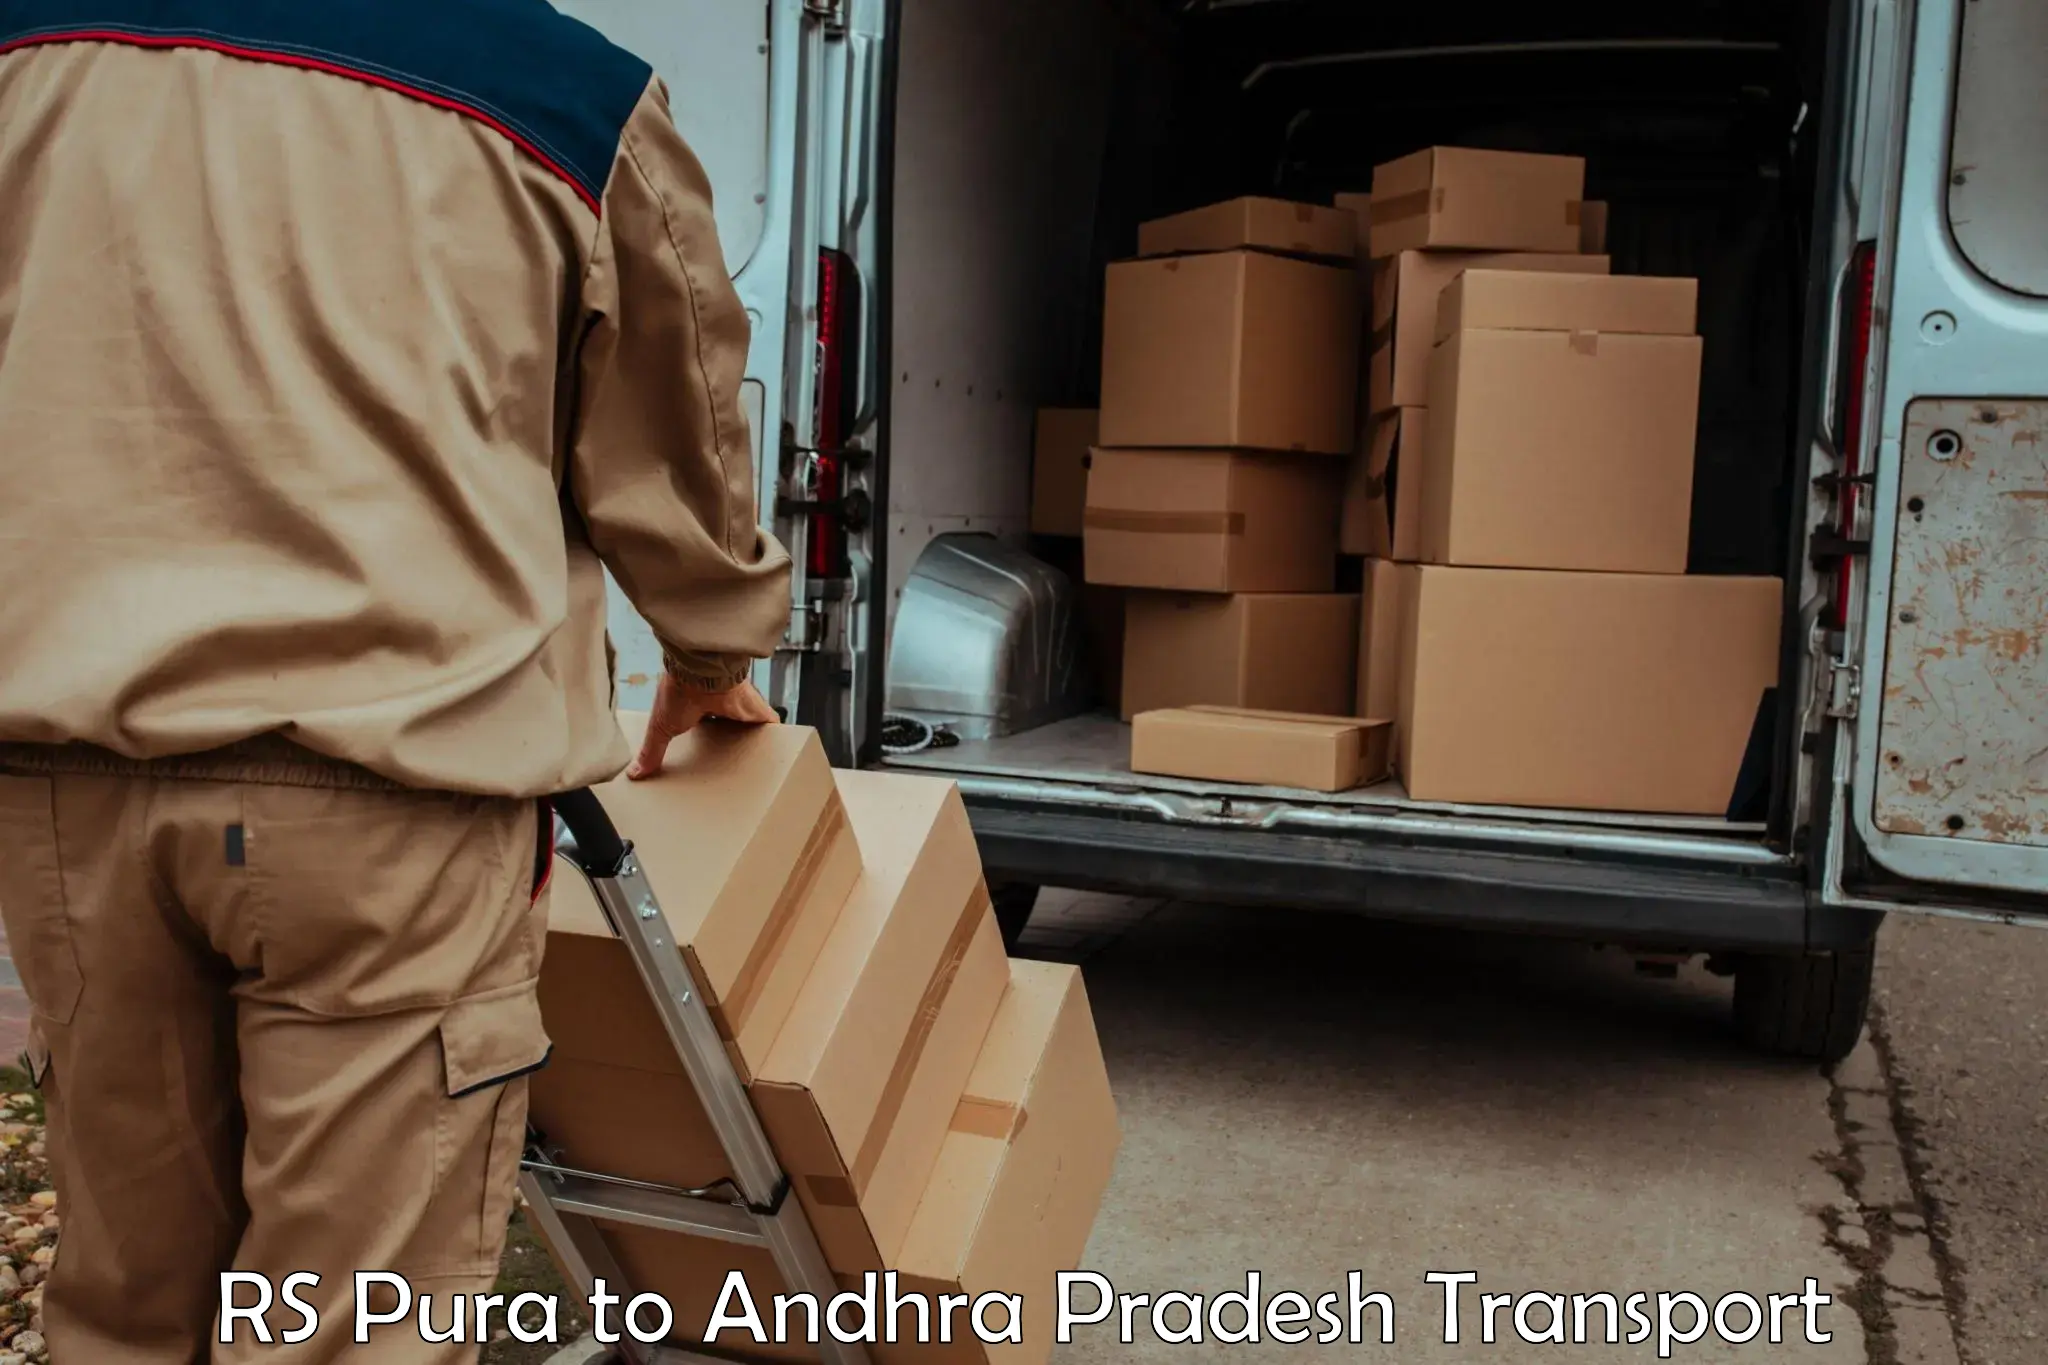 Delivery service RS Pura to Tada Tirupati